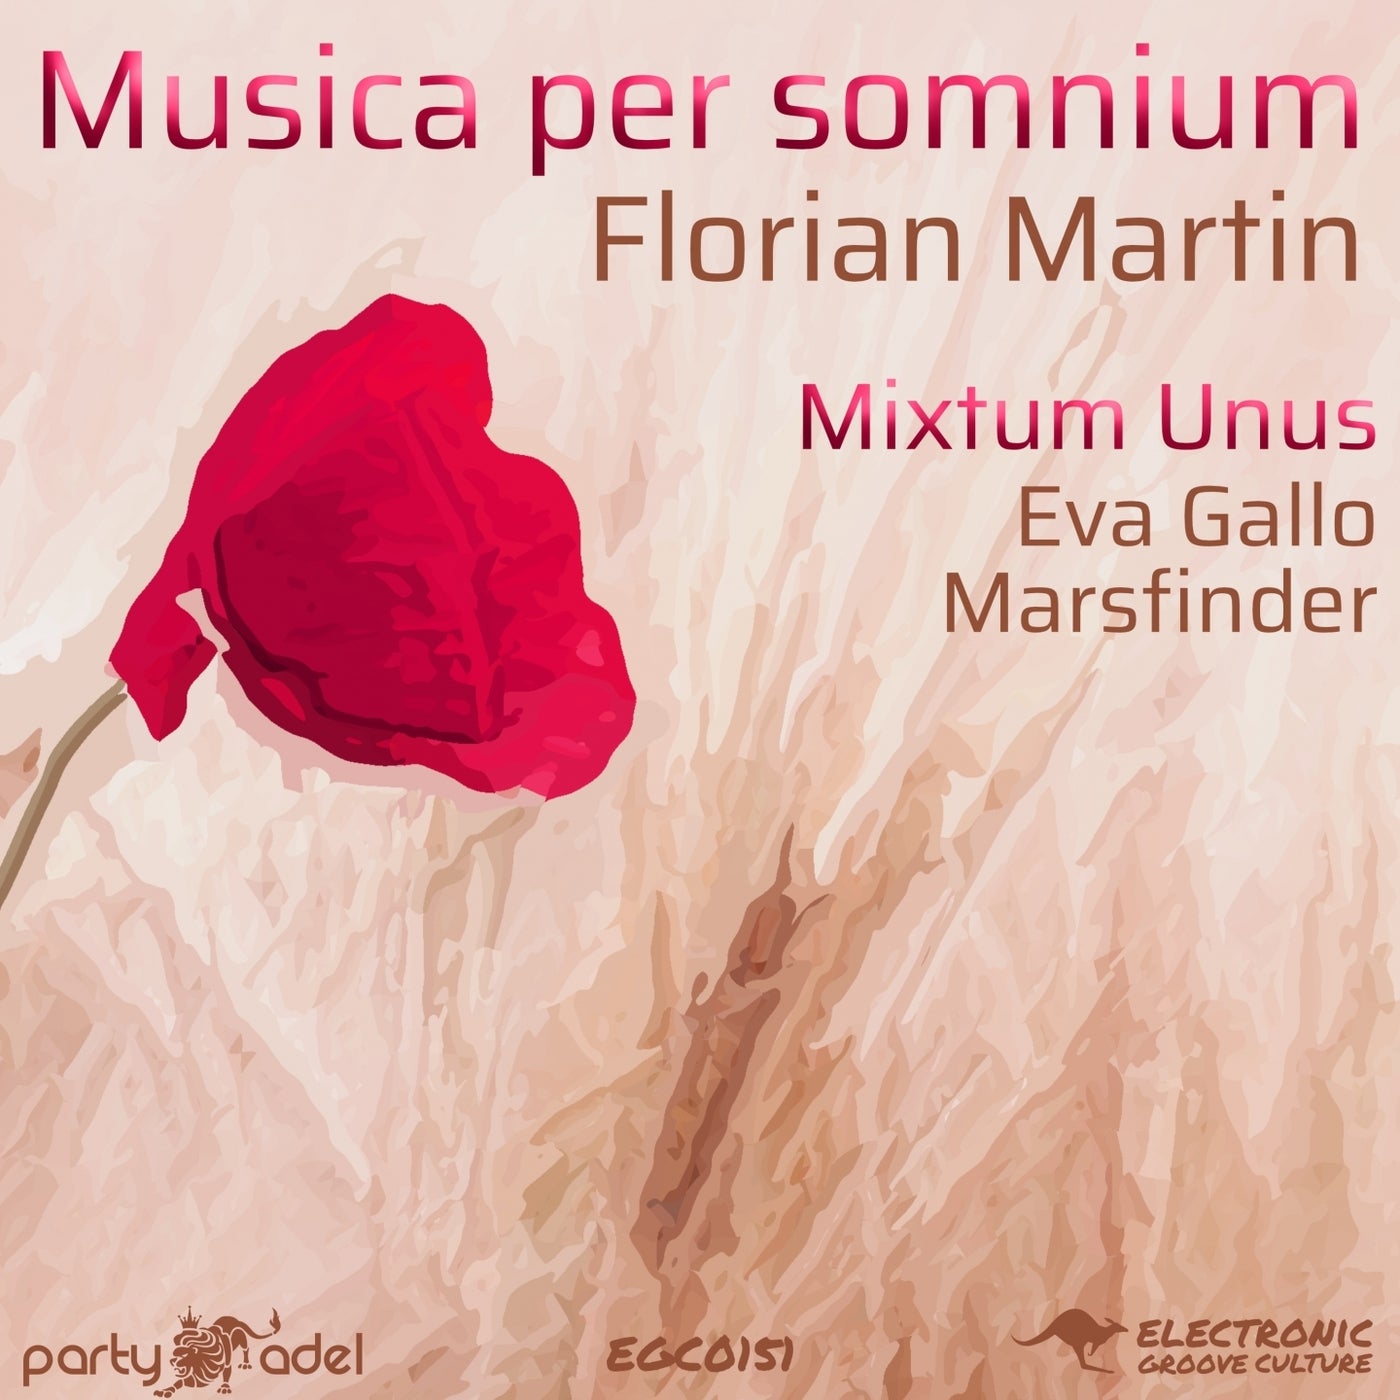 Musica per somnium (Mixtum Unus)